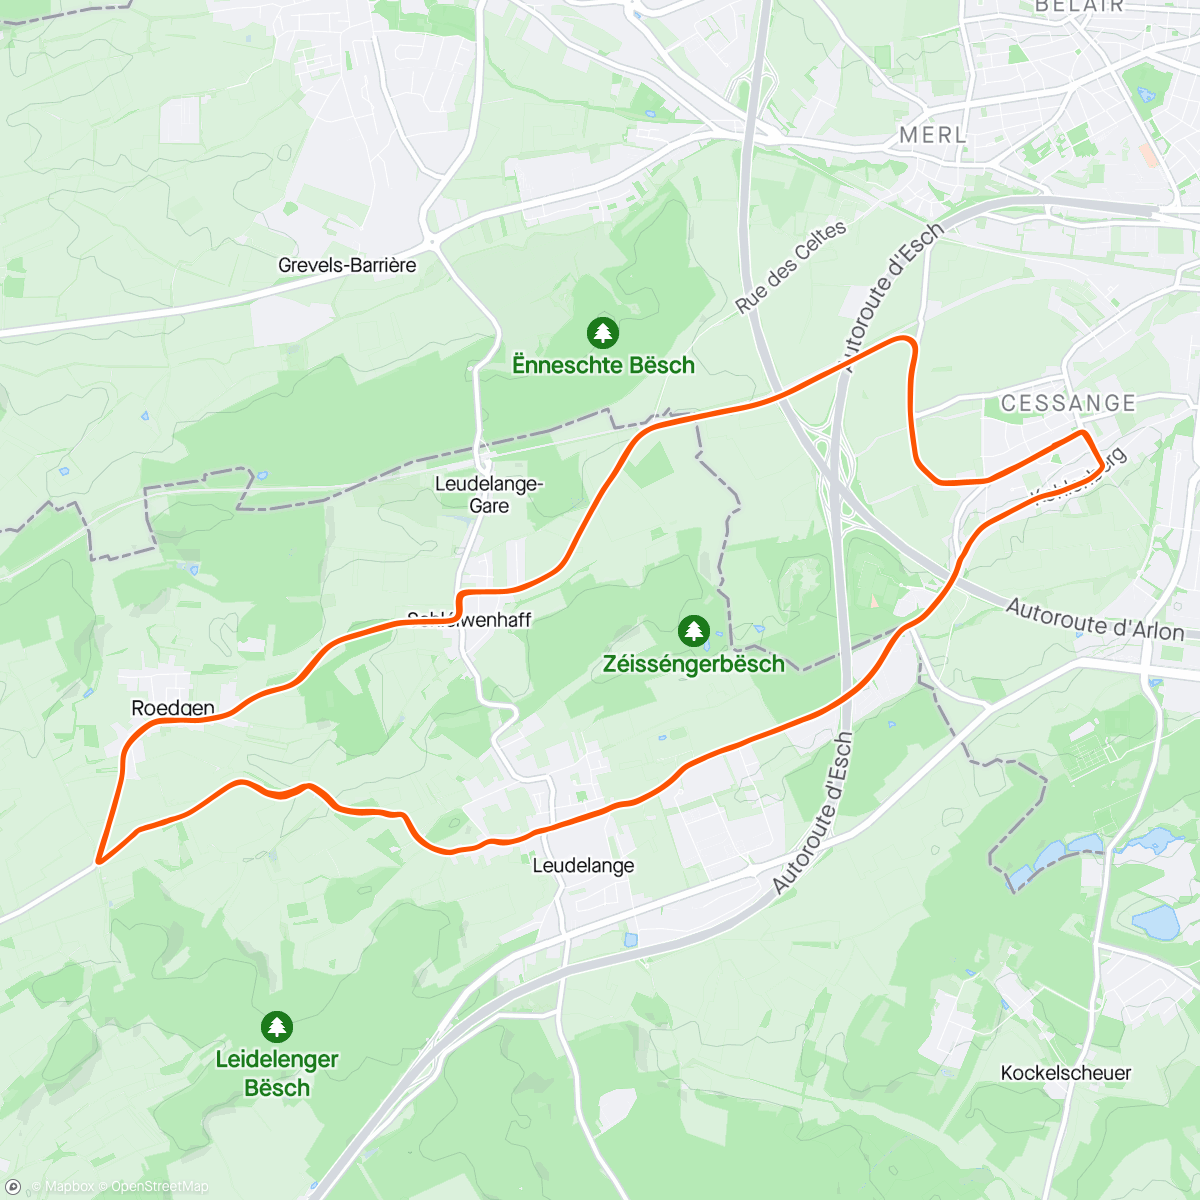 「Luxembourg - J2 - 27e」活動的地圖